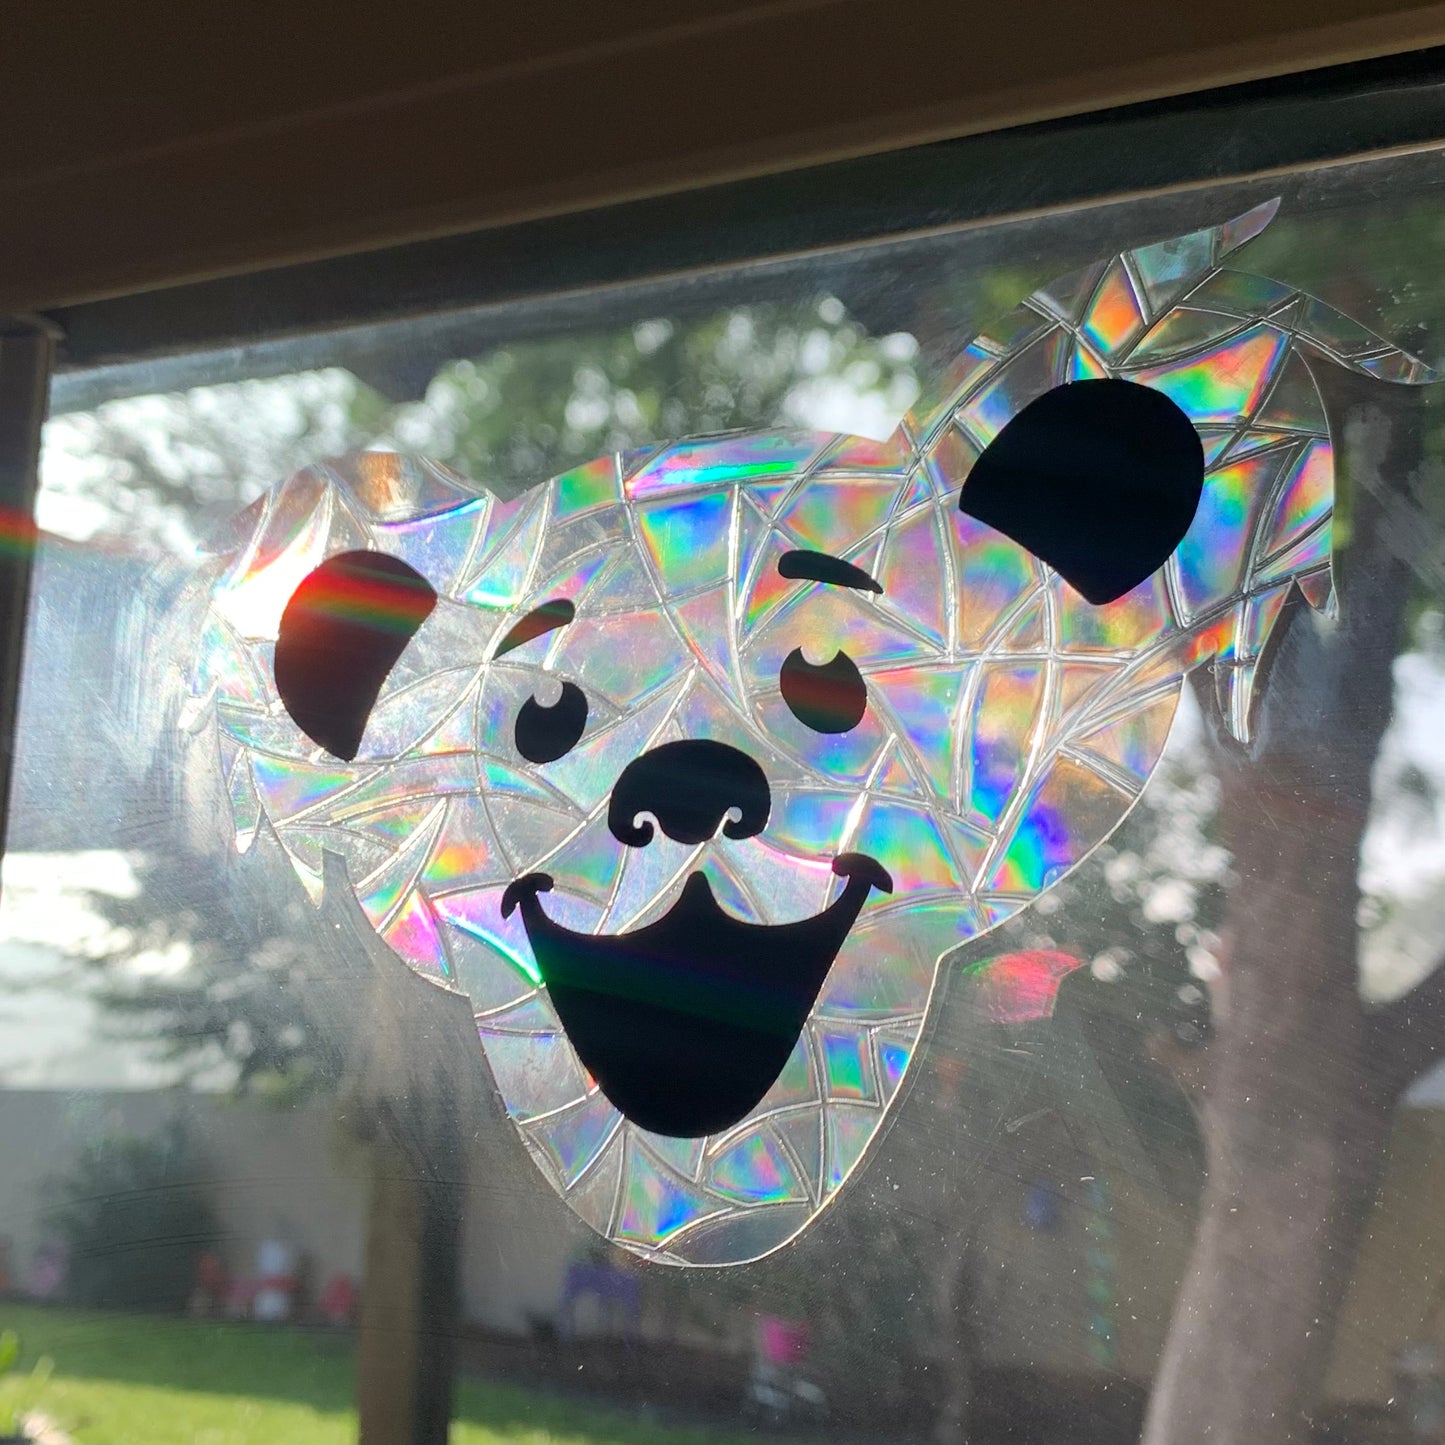 Bear window cling